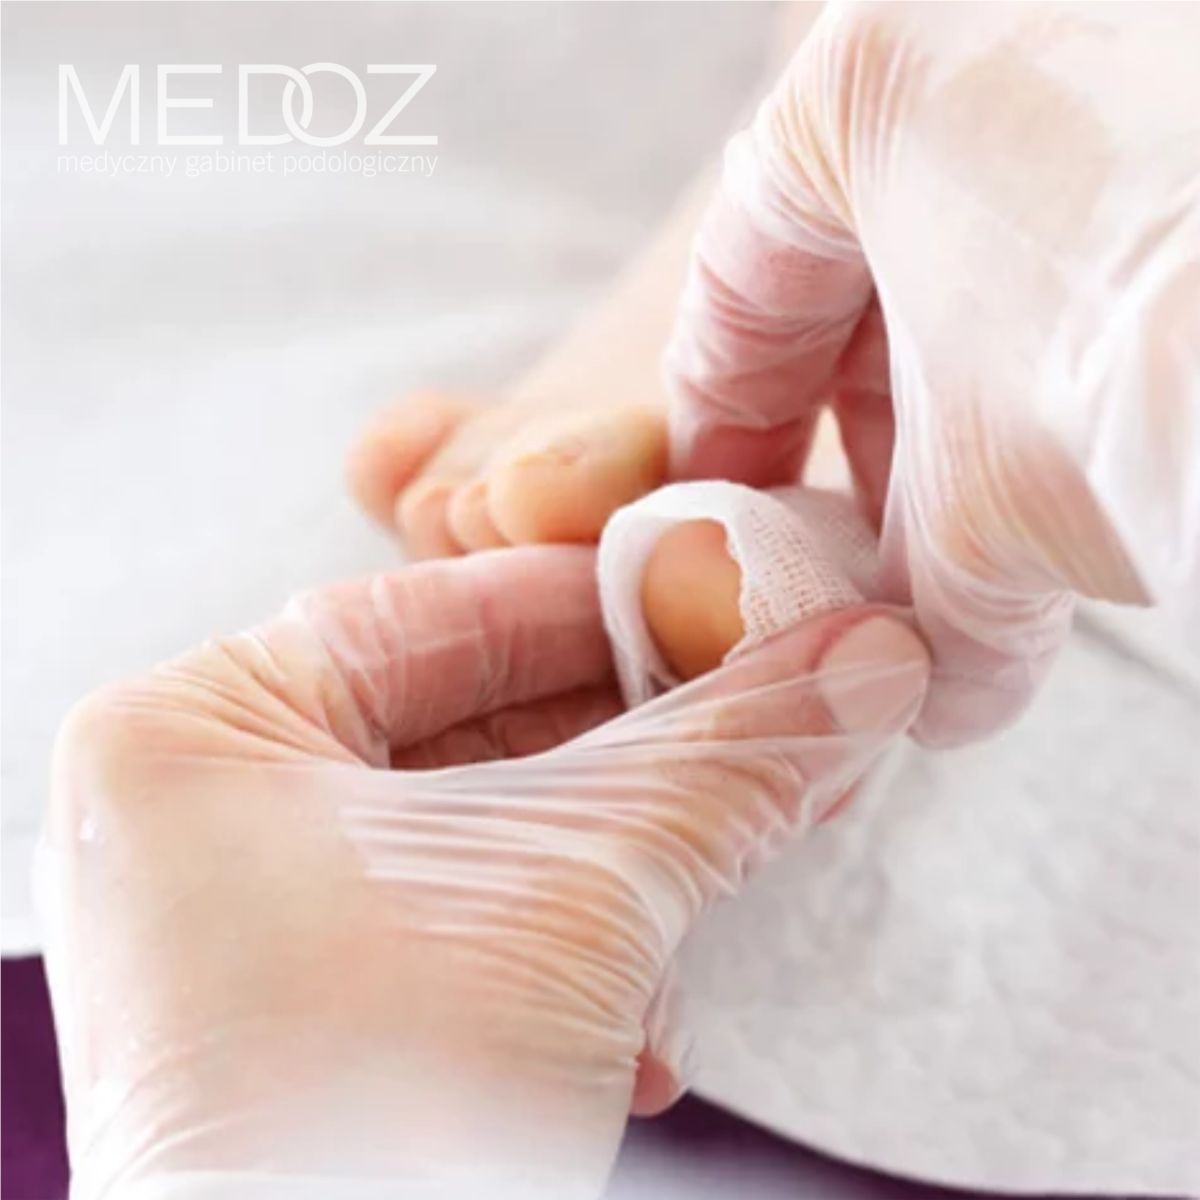 MEDOZ Medyczny gabinet podologiczny bydgoszcz podolog leczenie wrastających paznokci